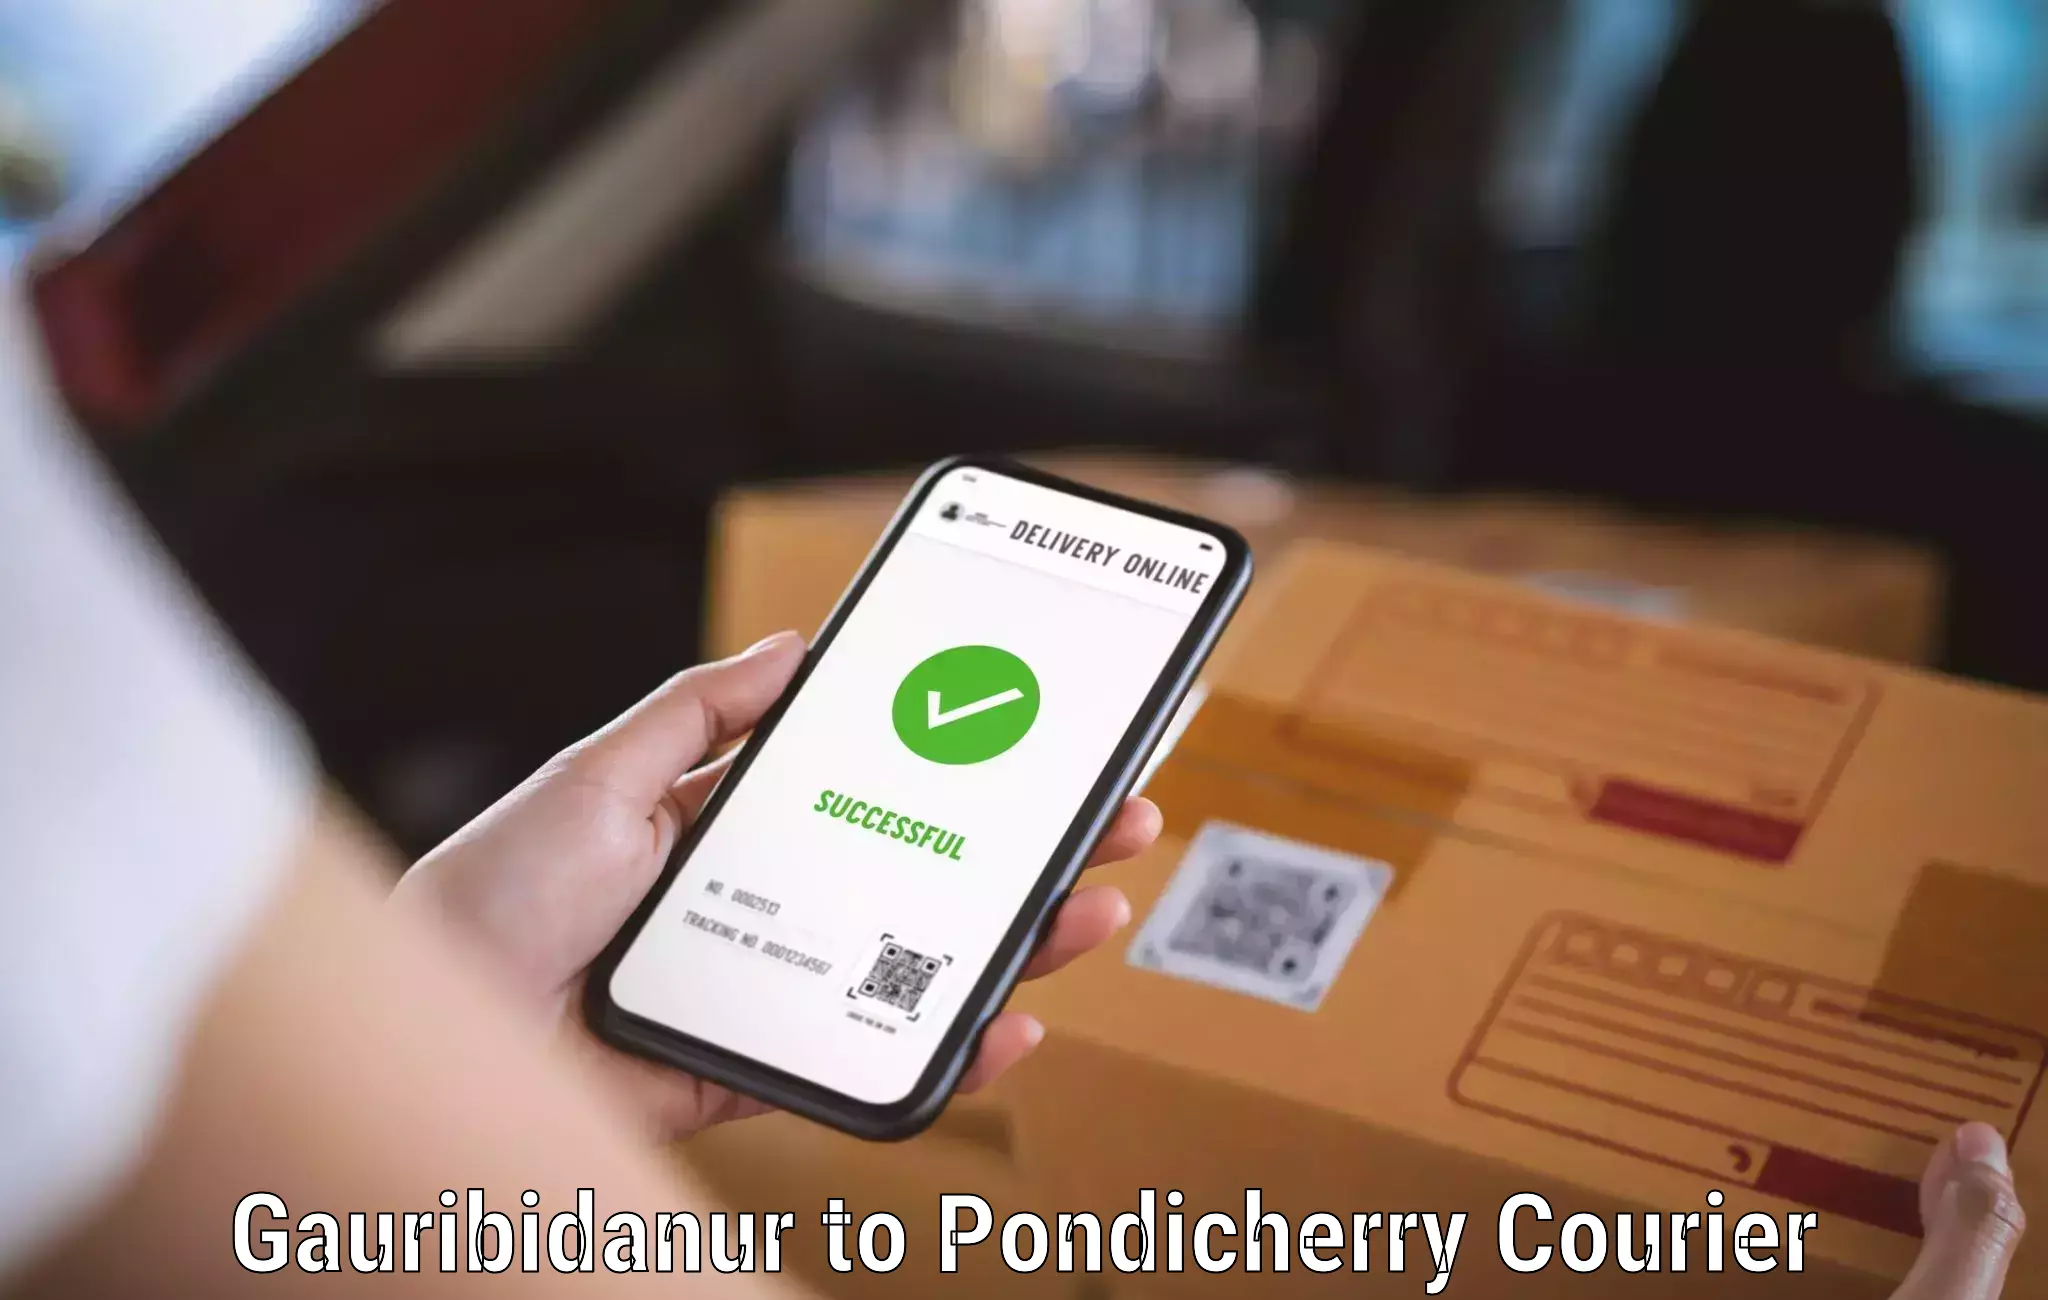 Reliable courier service Gauribidanur to Pondicherry